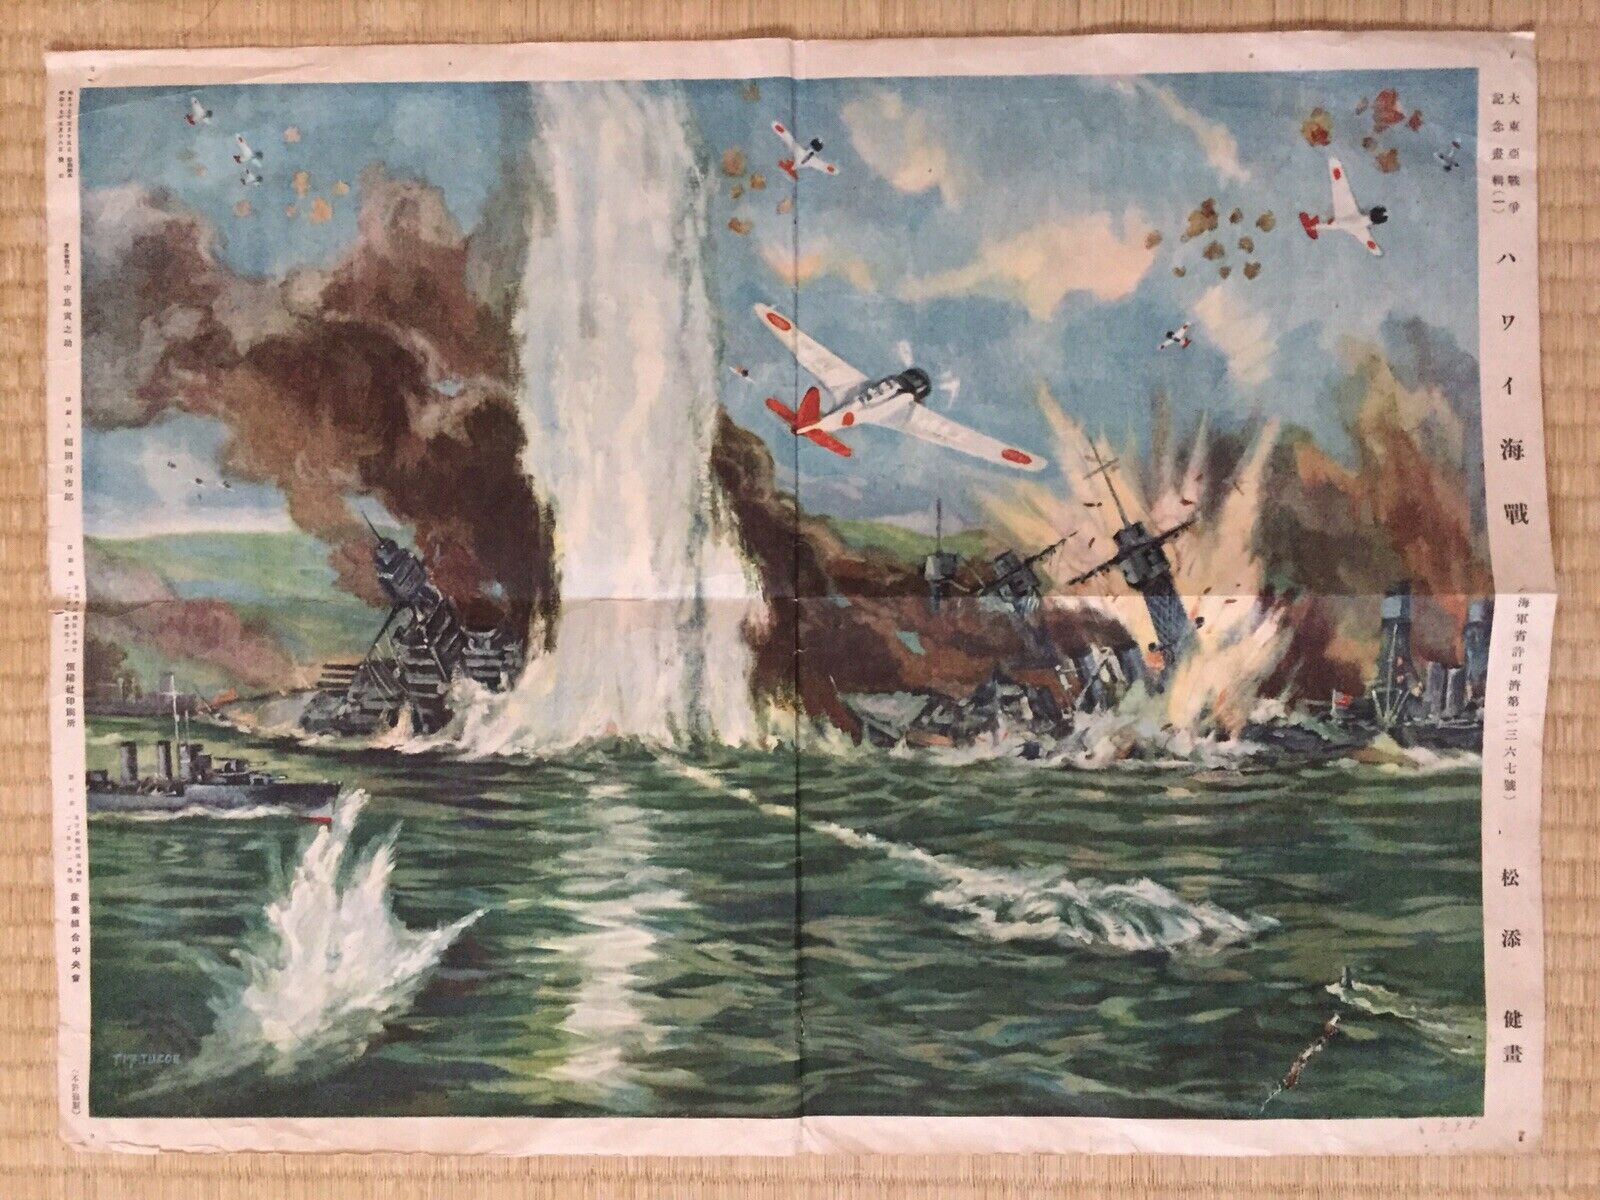 Wwii Attack On Pearl Harbor Print By Matsuzaki Poster Pacific War Propaganda Us